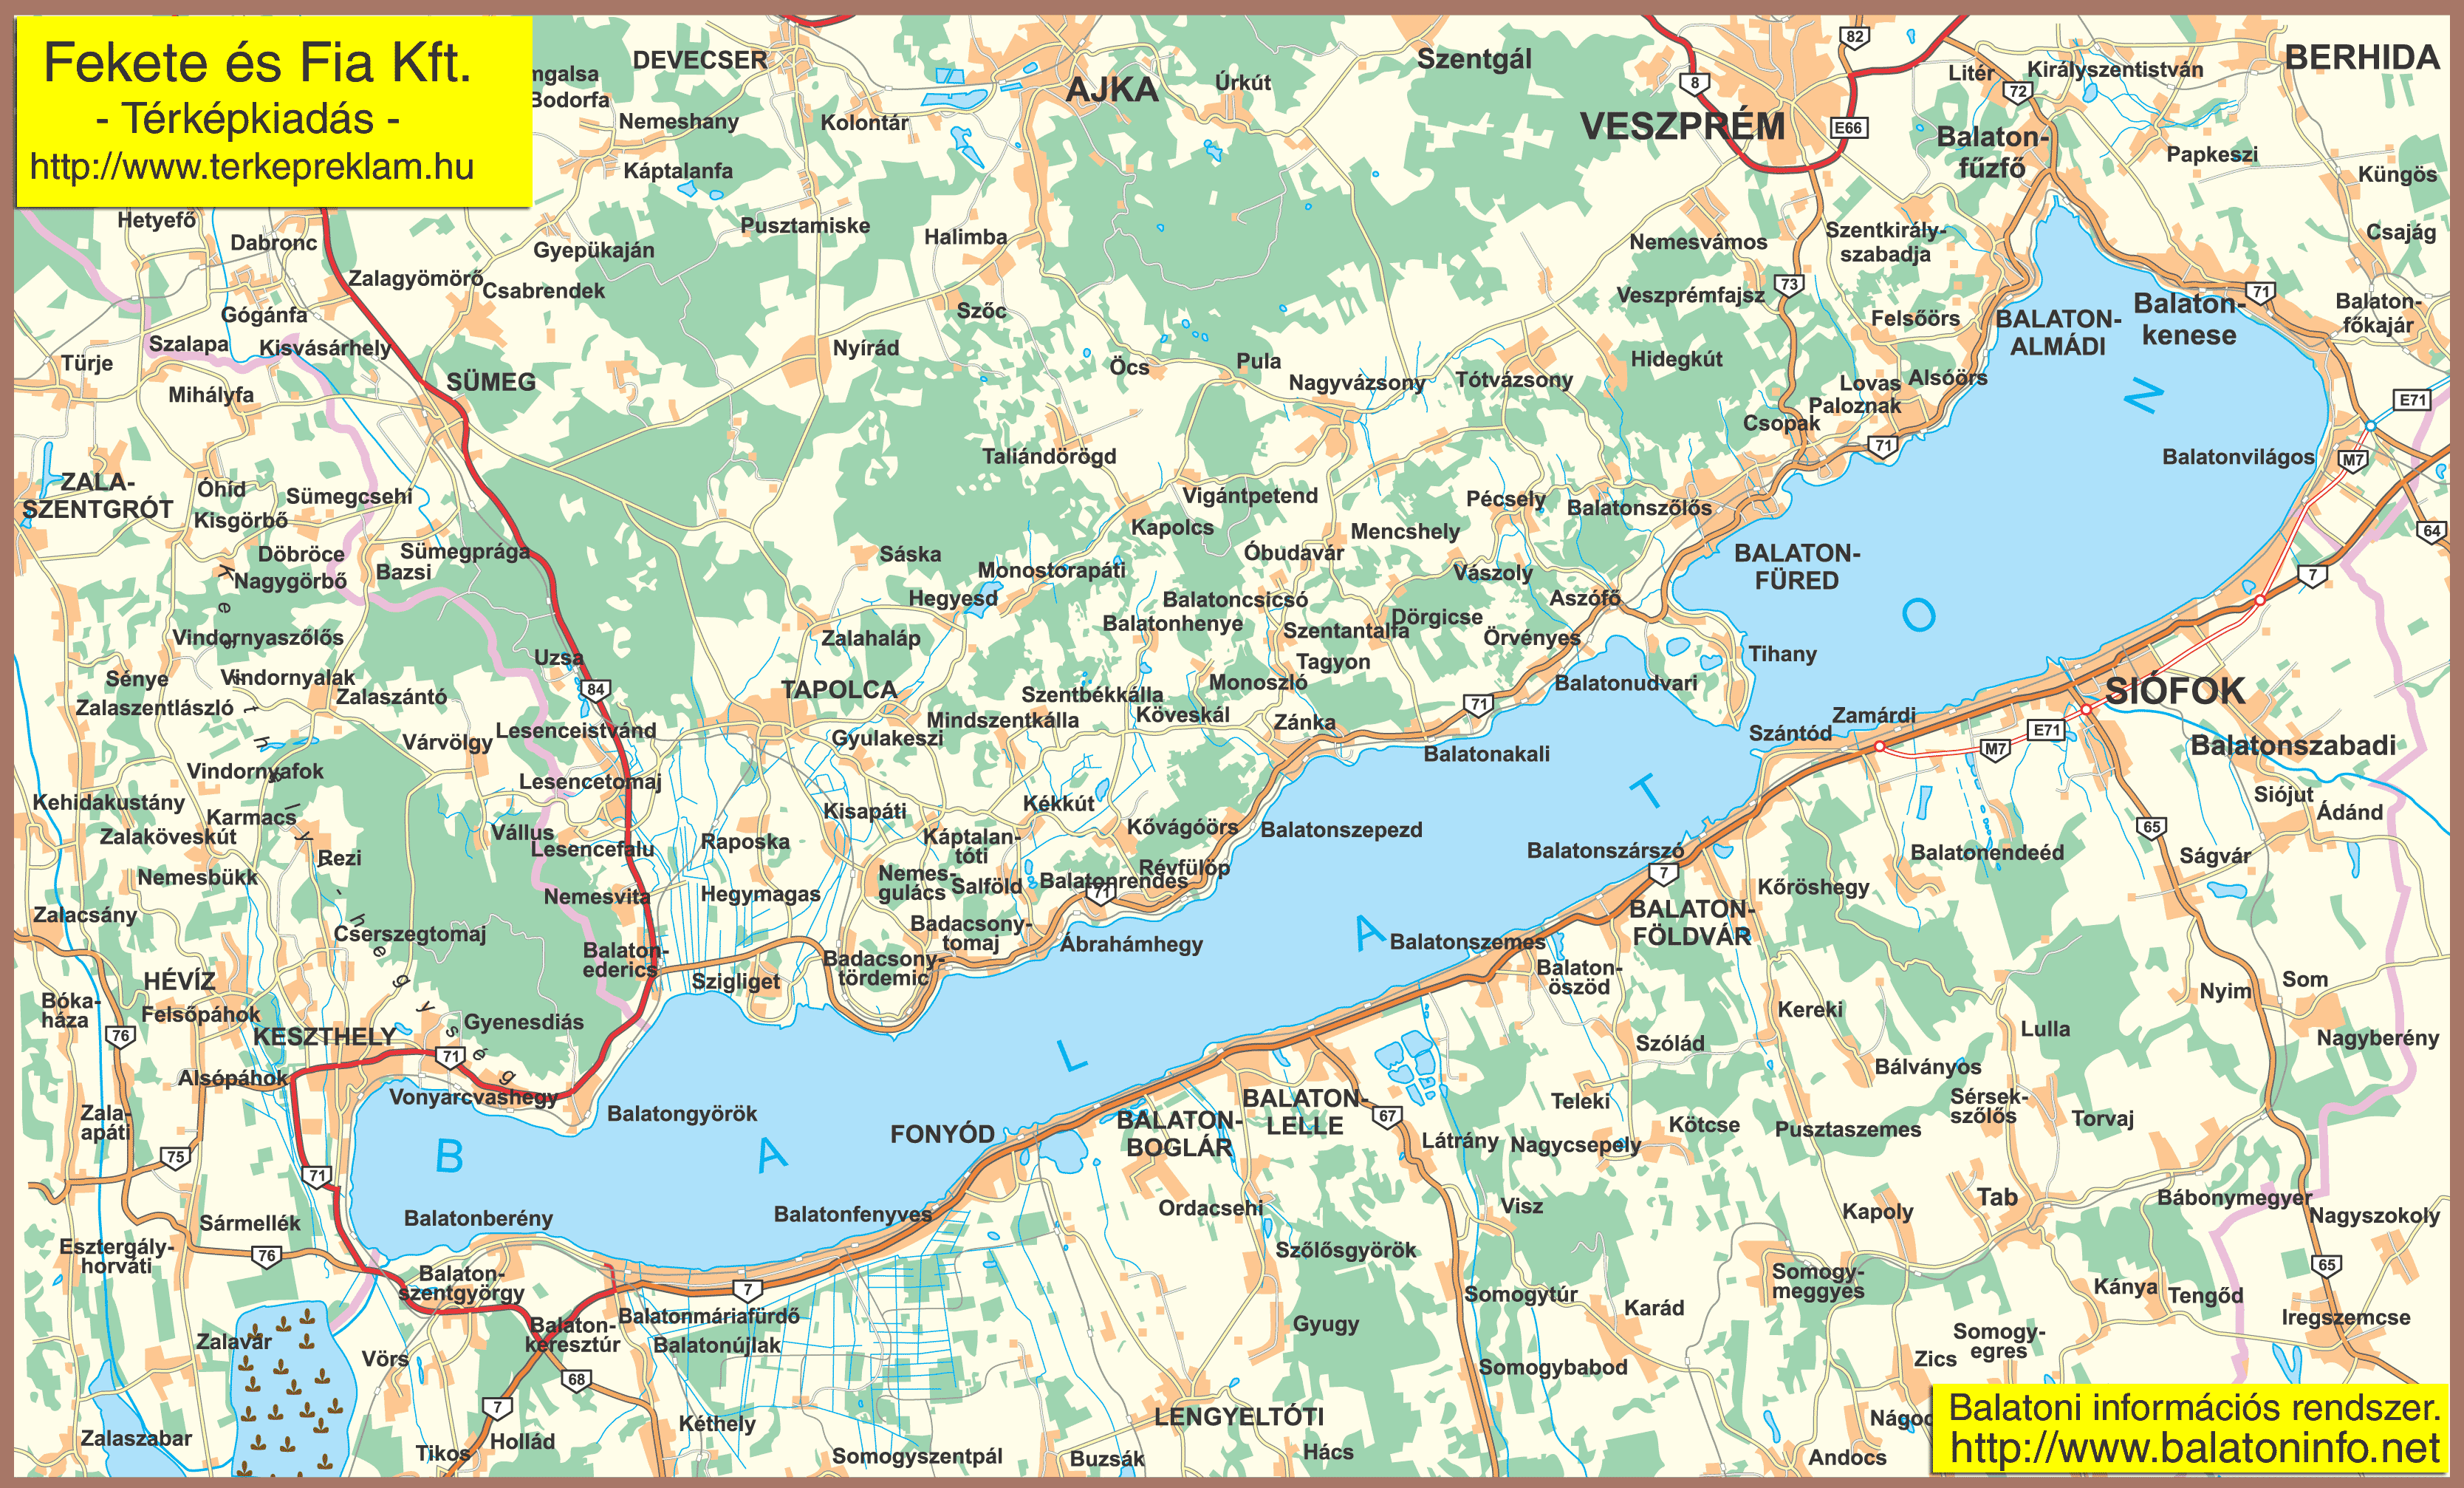 nyomtatható balaton térkép Online térképek: Balaton térkép nyomtatható balaton térkép